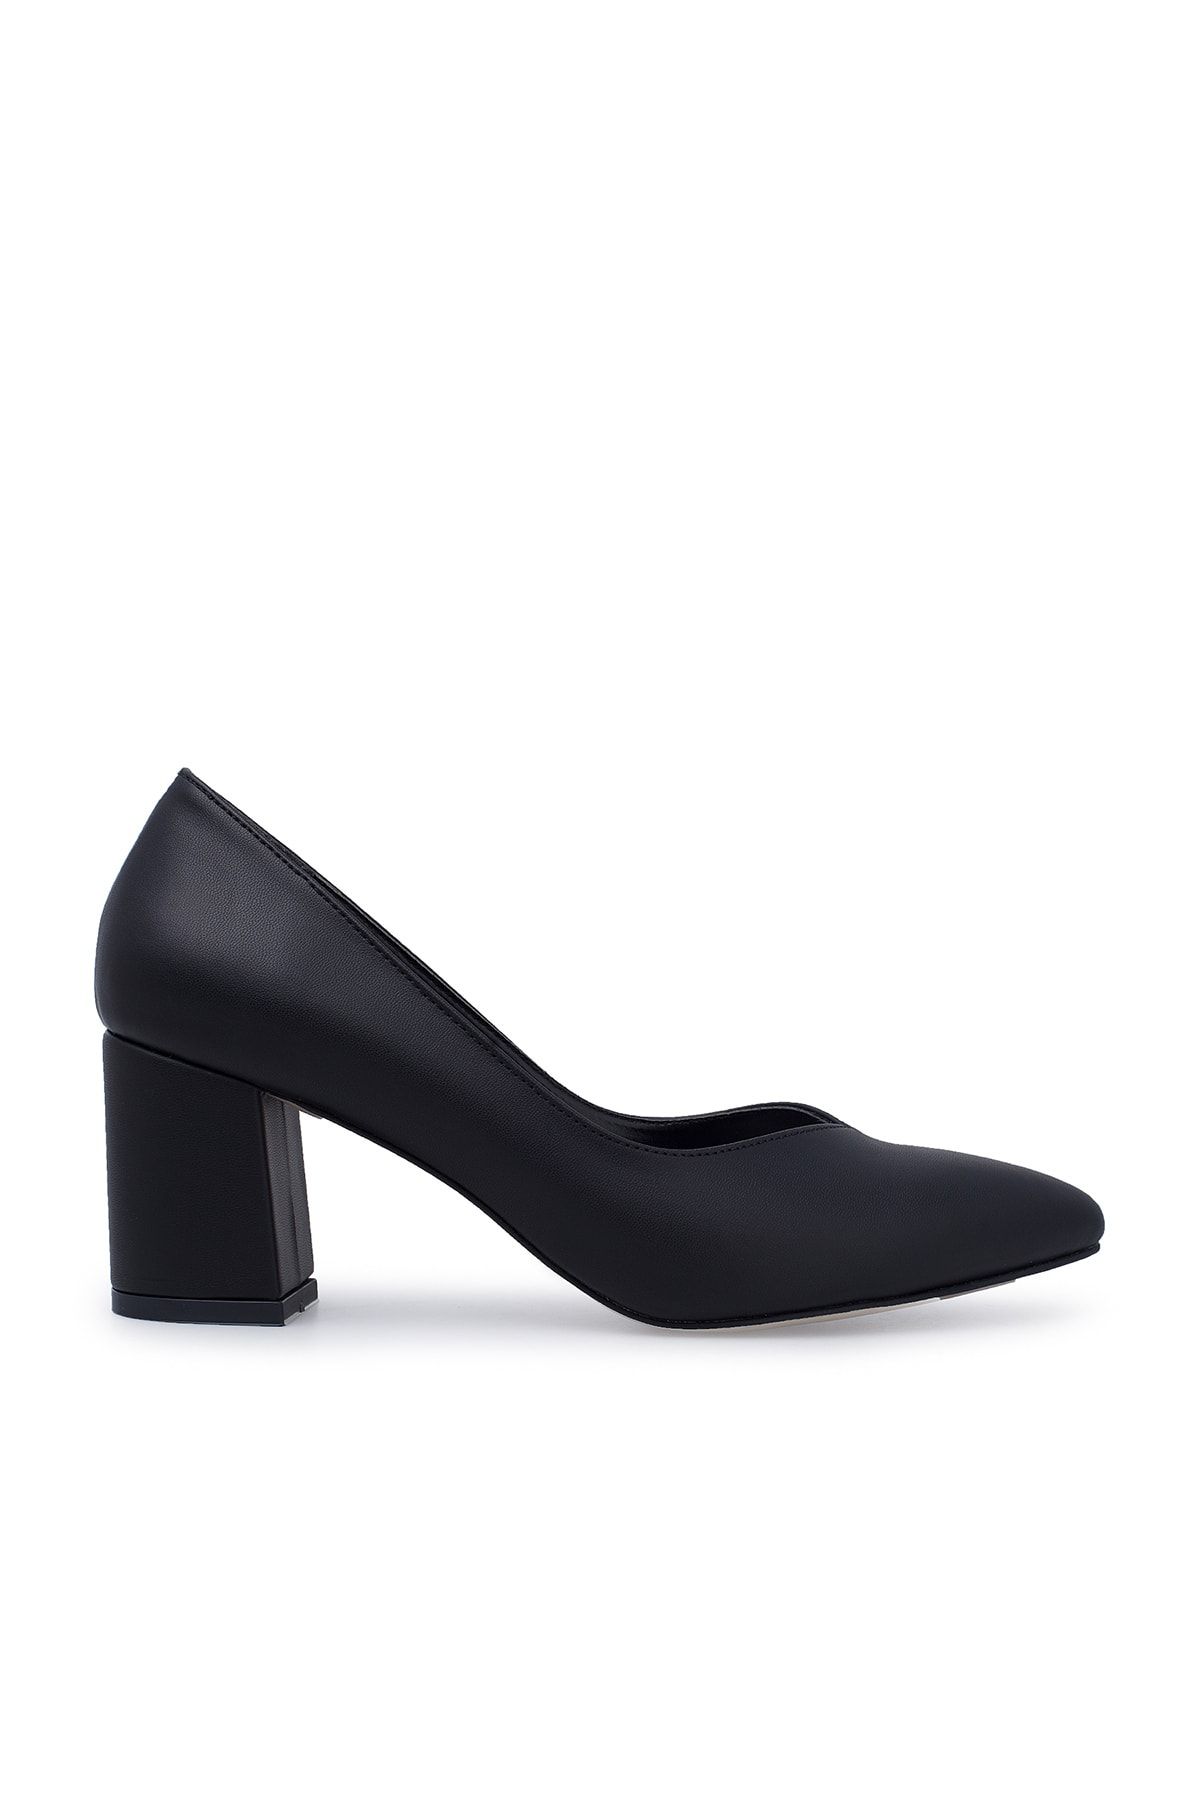 Pierre Cardin Topuklu Ayakkabı Kadın Ayakkabı Pc50177